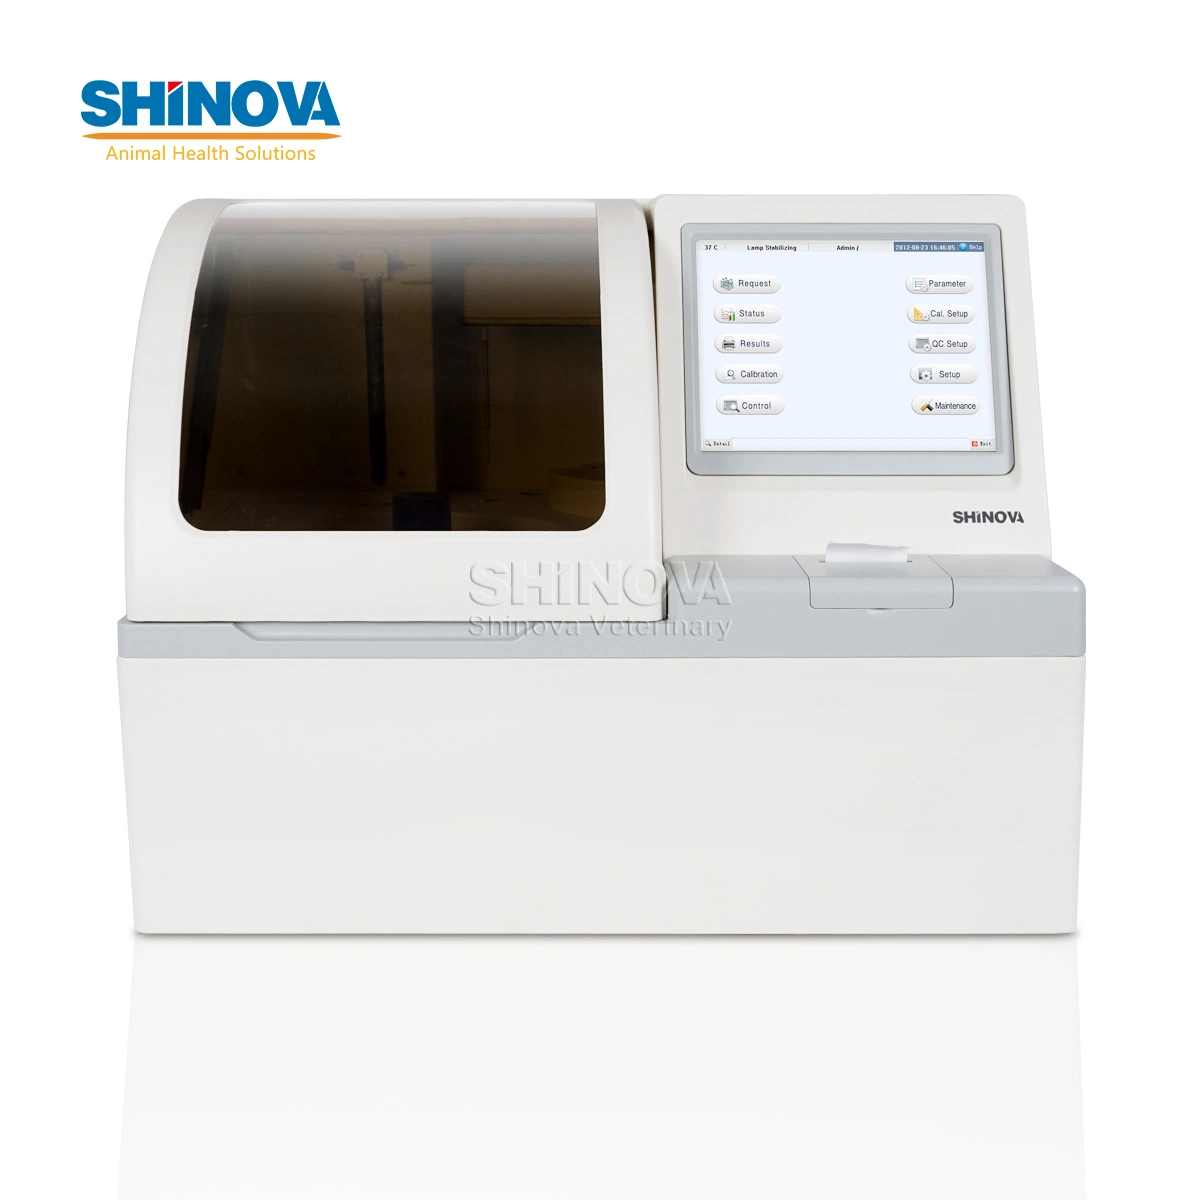 Shinova Multi-Language completamente automático Análisis químico equipos de análisis de sangre Vet Equipo de laboratorio para el analizador de bioquímica para uso hospitalario veterinario